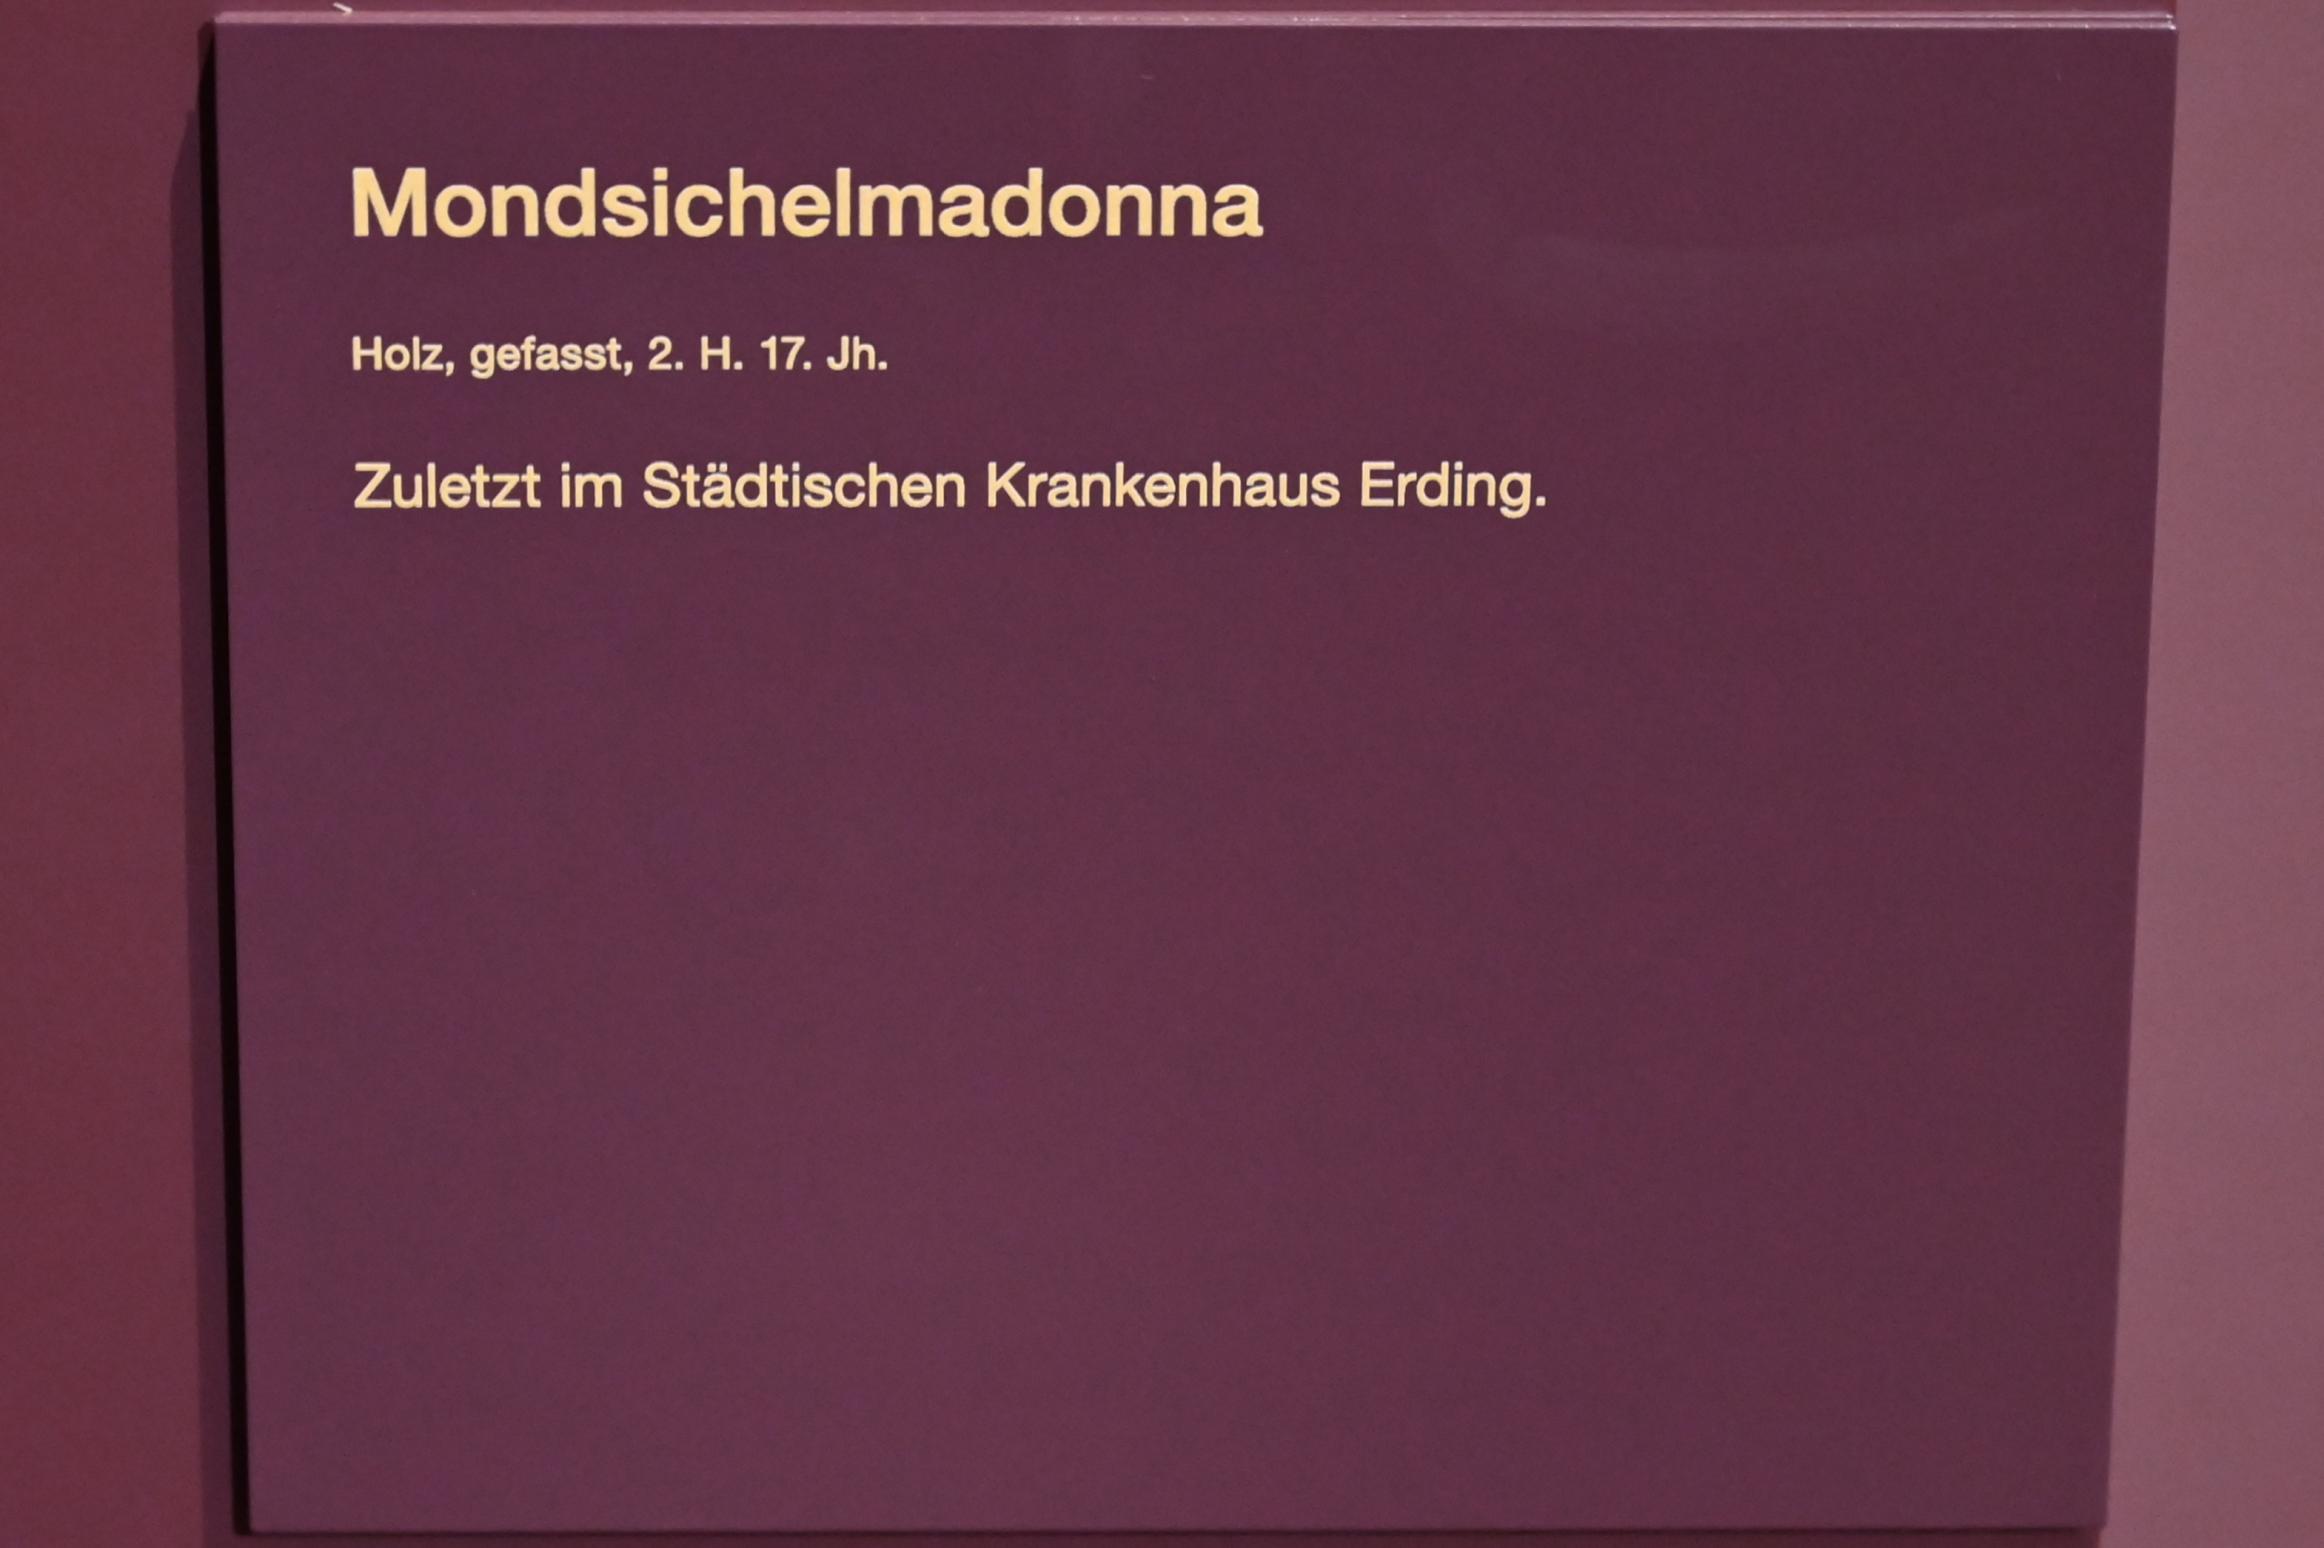 Mondsichelmadonna, Erding, Museum Erding, Kirchenkunst, 2. Hälfte 17. Jhd., Bild 4/4